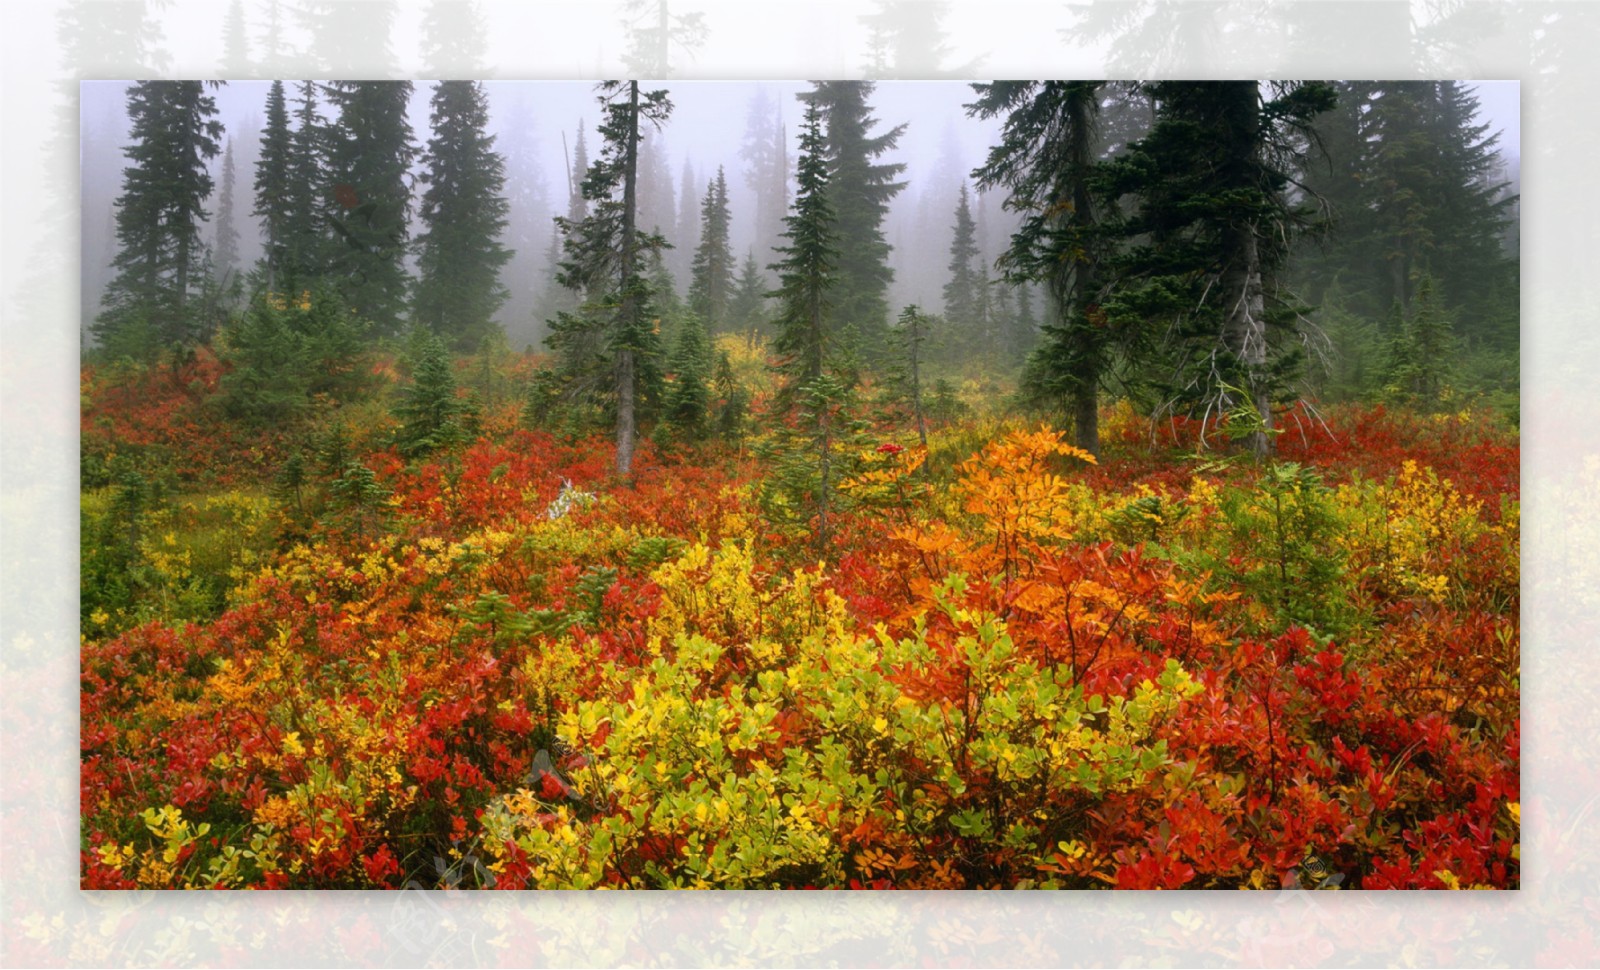 深秋雾气环绕森林图片